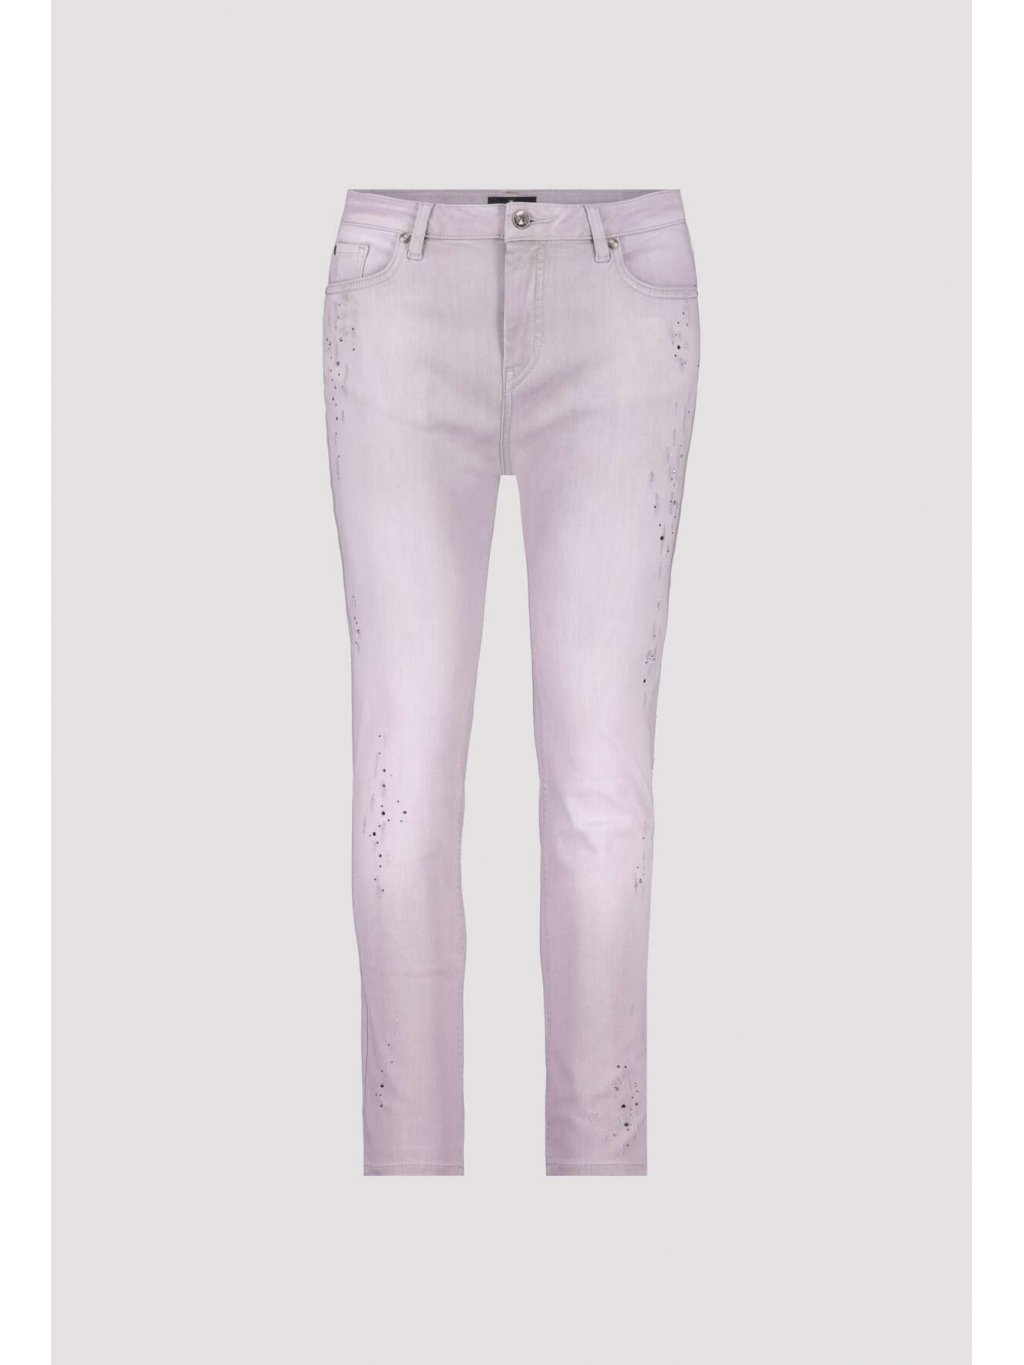 Kalhoty Monari  8255 lila džíny s aplikacemi 